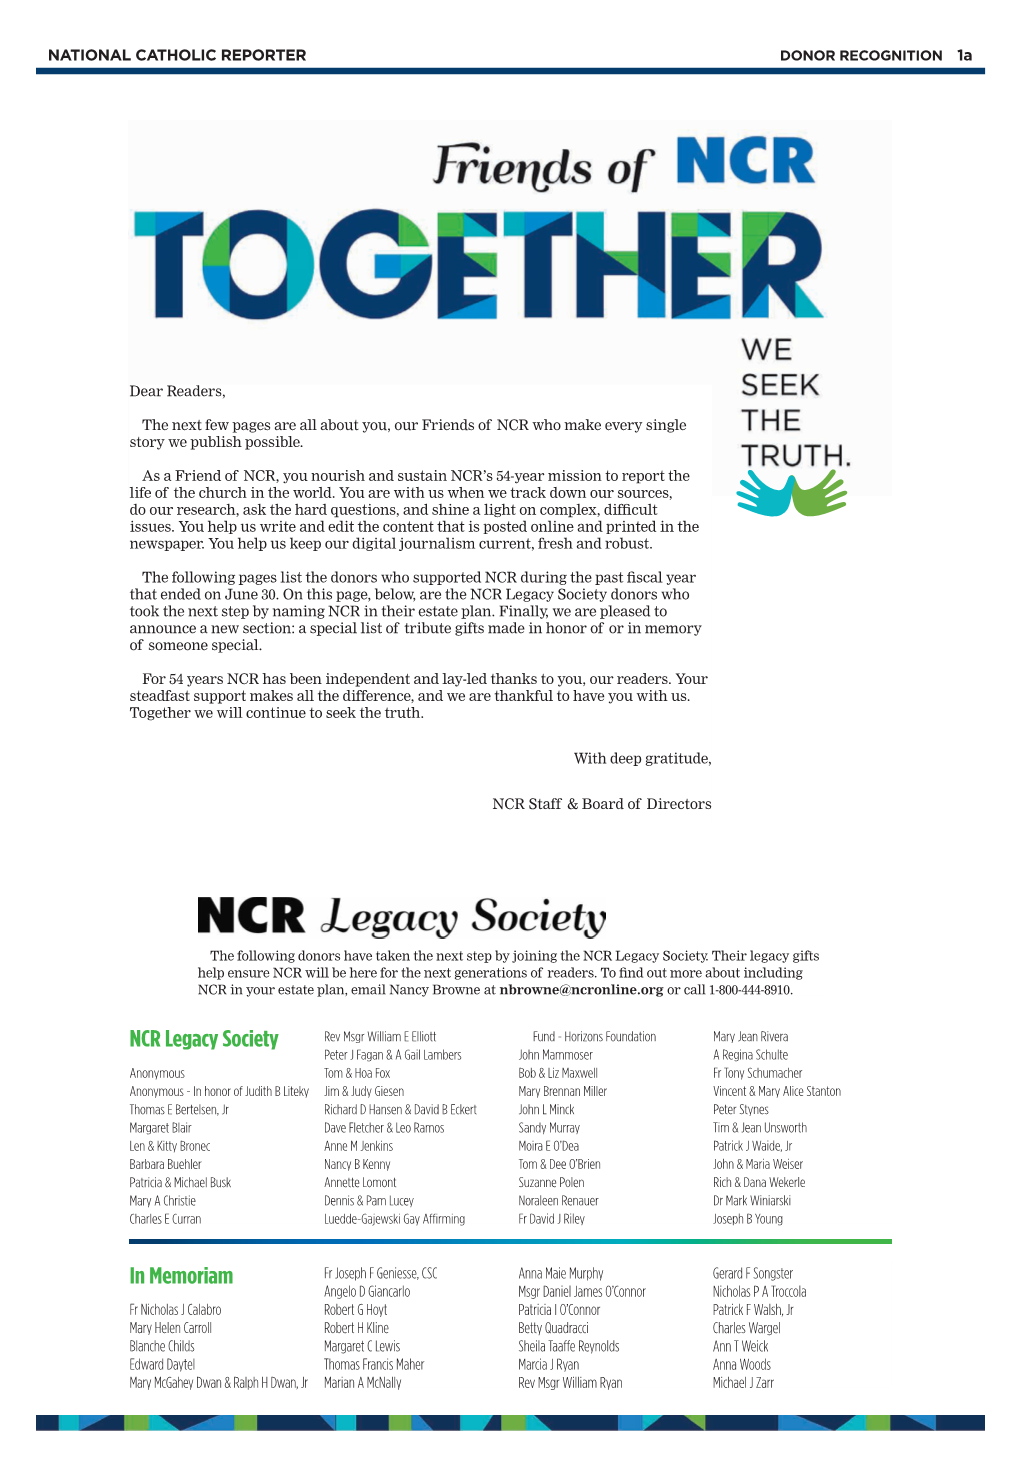 NCR Legacy Society in Memoriam